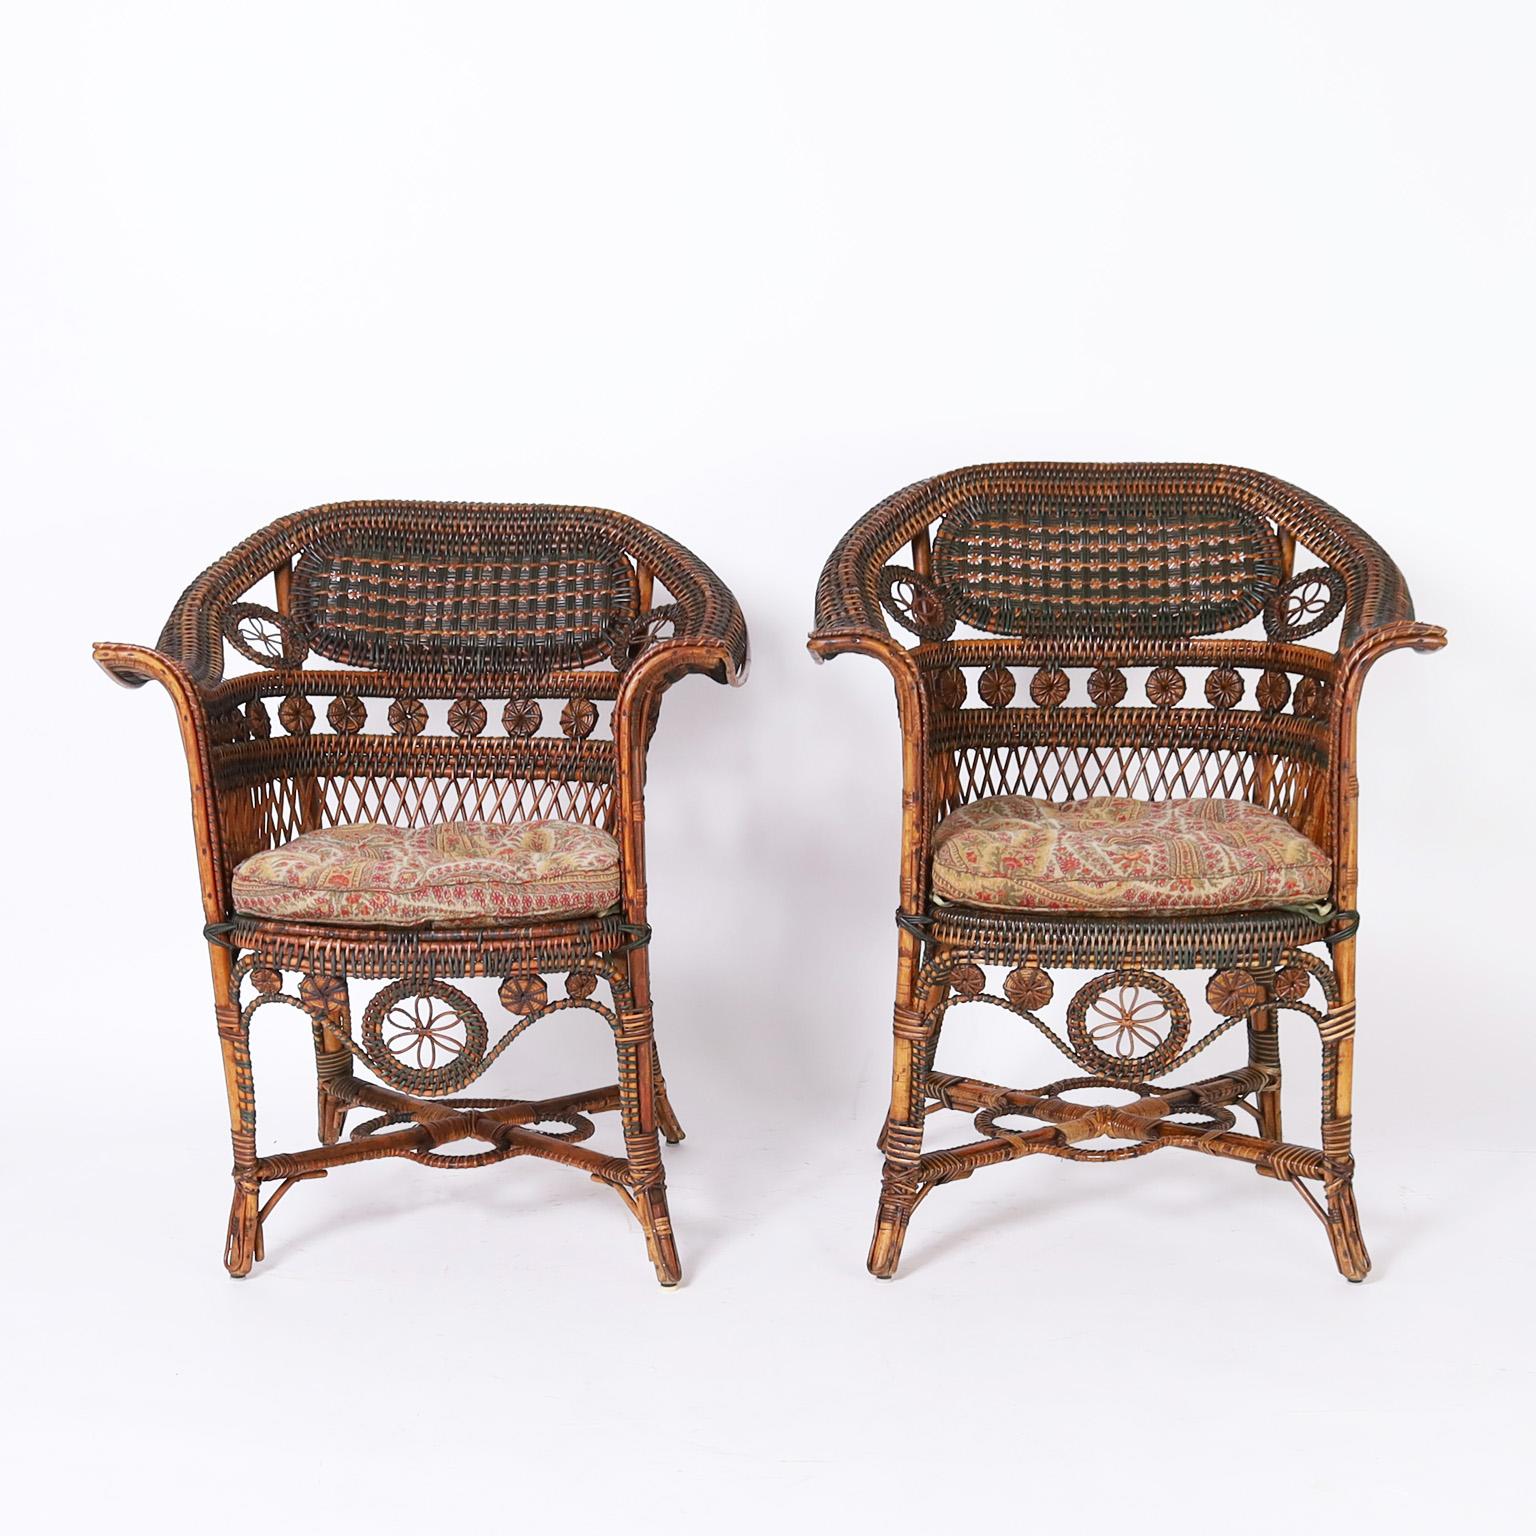 Impressionnante paire d'anciennes chaises de café françaises en rotin et roseau avec des cadres en bois courbé, décorés de rotin peint et enveloppé de roseau naturel dans une forme gracieuse avec de solides traverses. Signé Pierre Leroux. Comme on